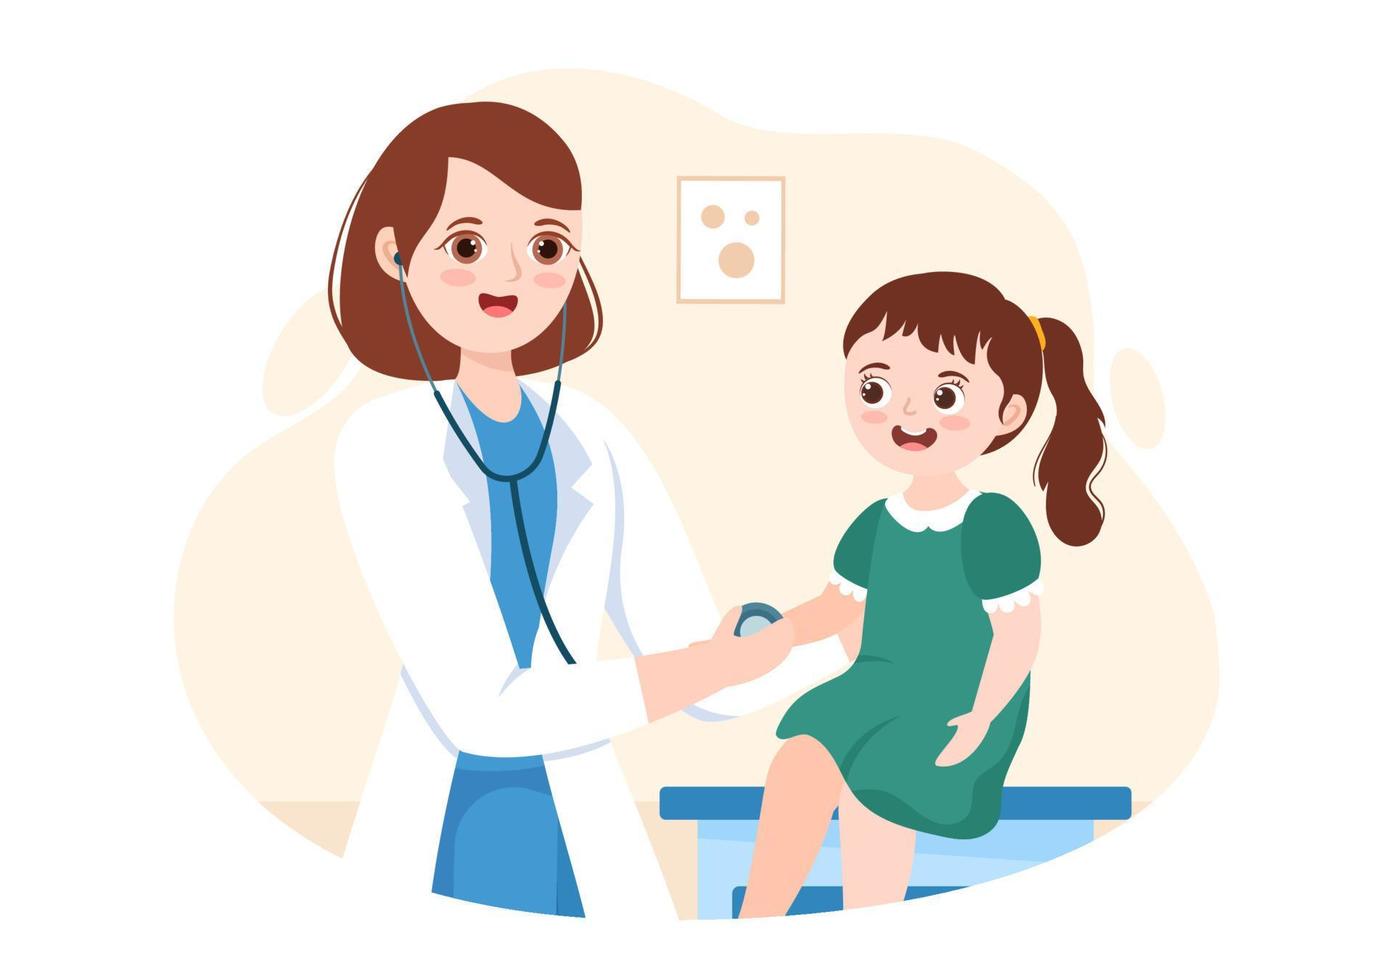 el pediatra examina a los niños y bebés enfermos para el desarrollo médico, la vacunación y el tratamiento en dibujos animados planos dibujados a mano ilustración de plantillas vector